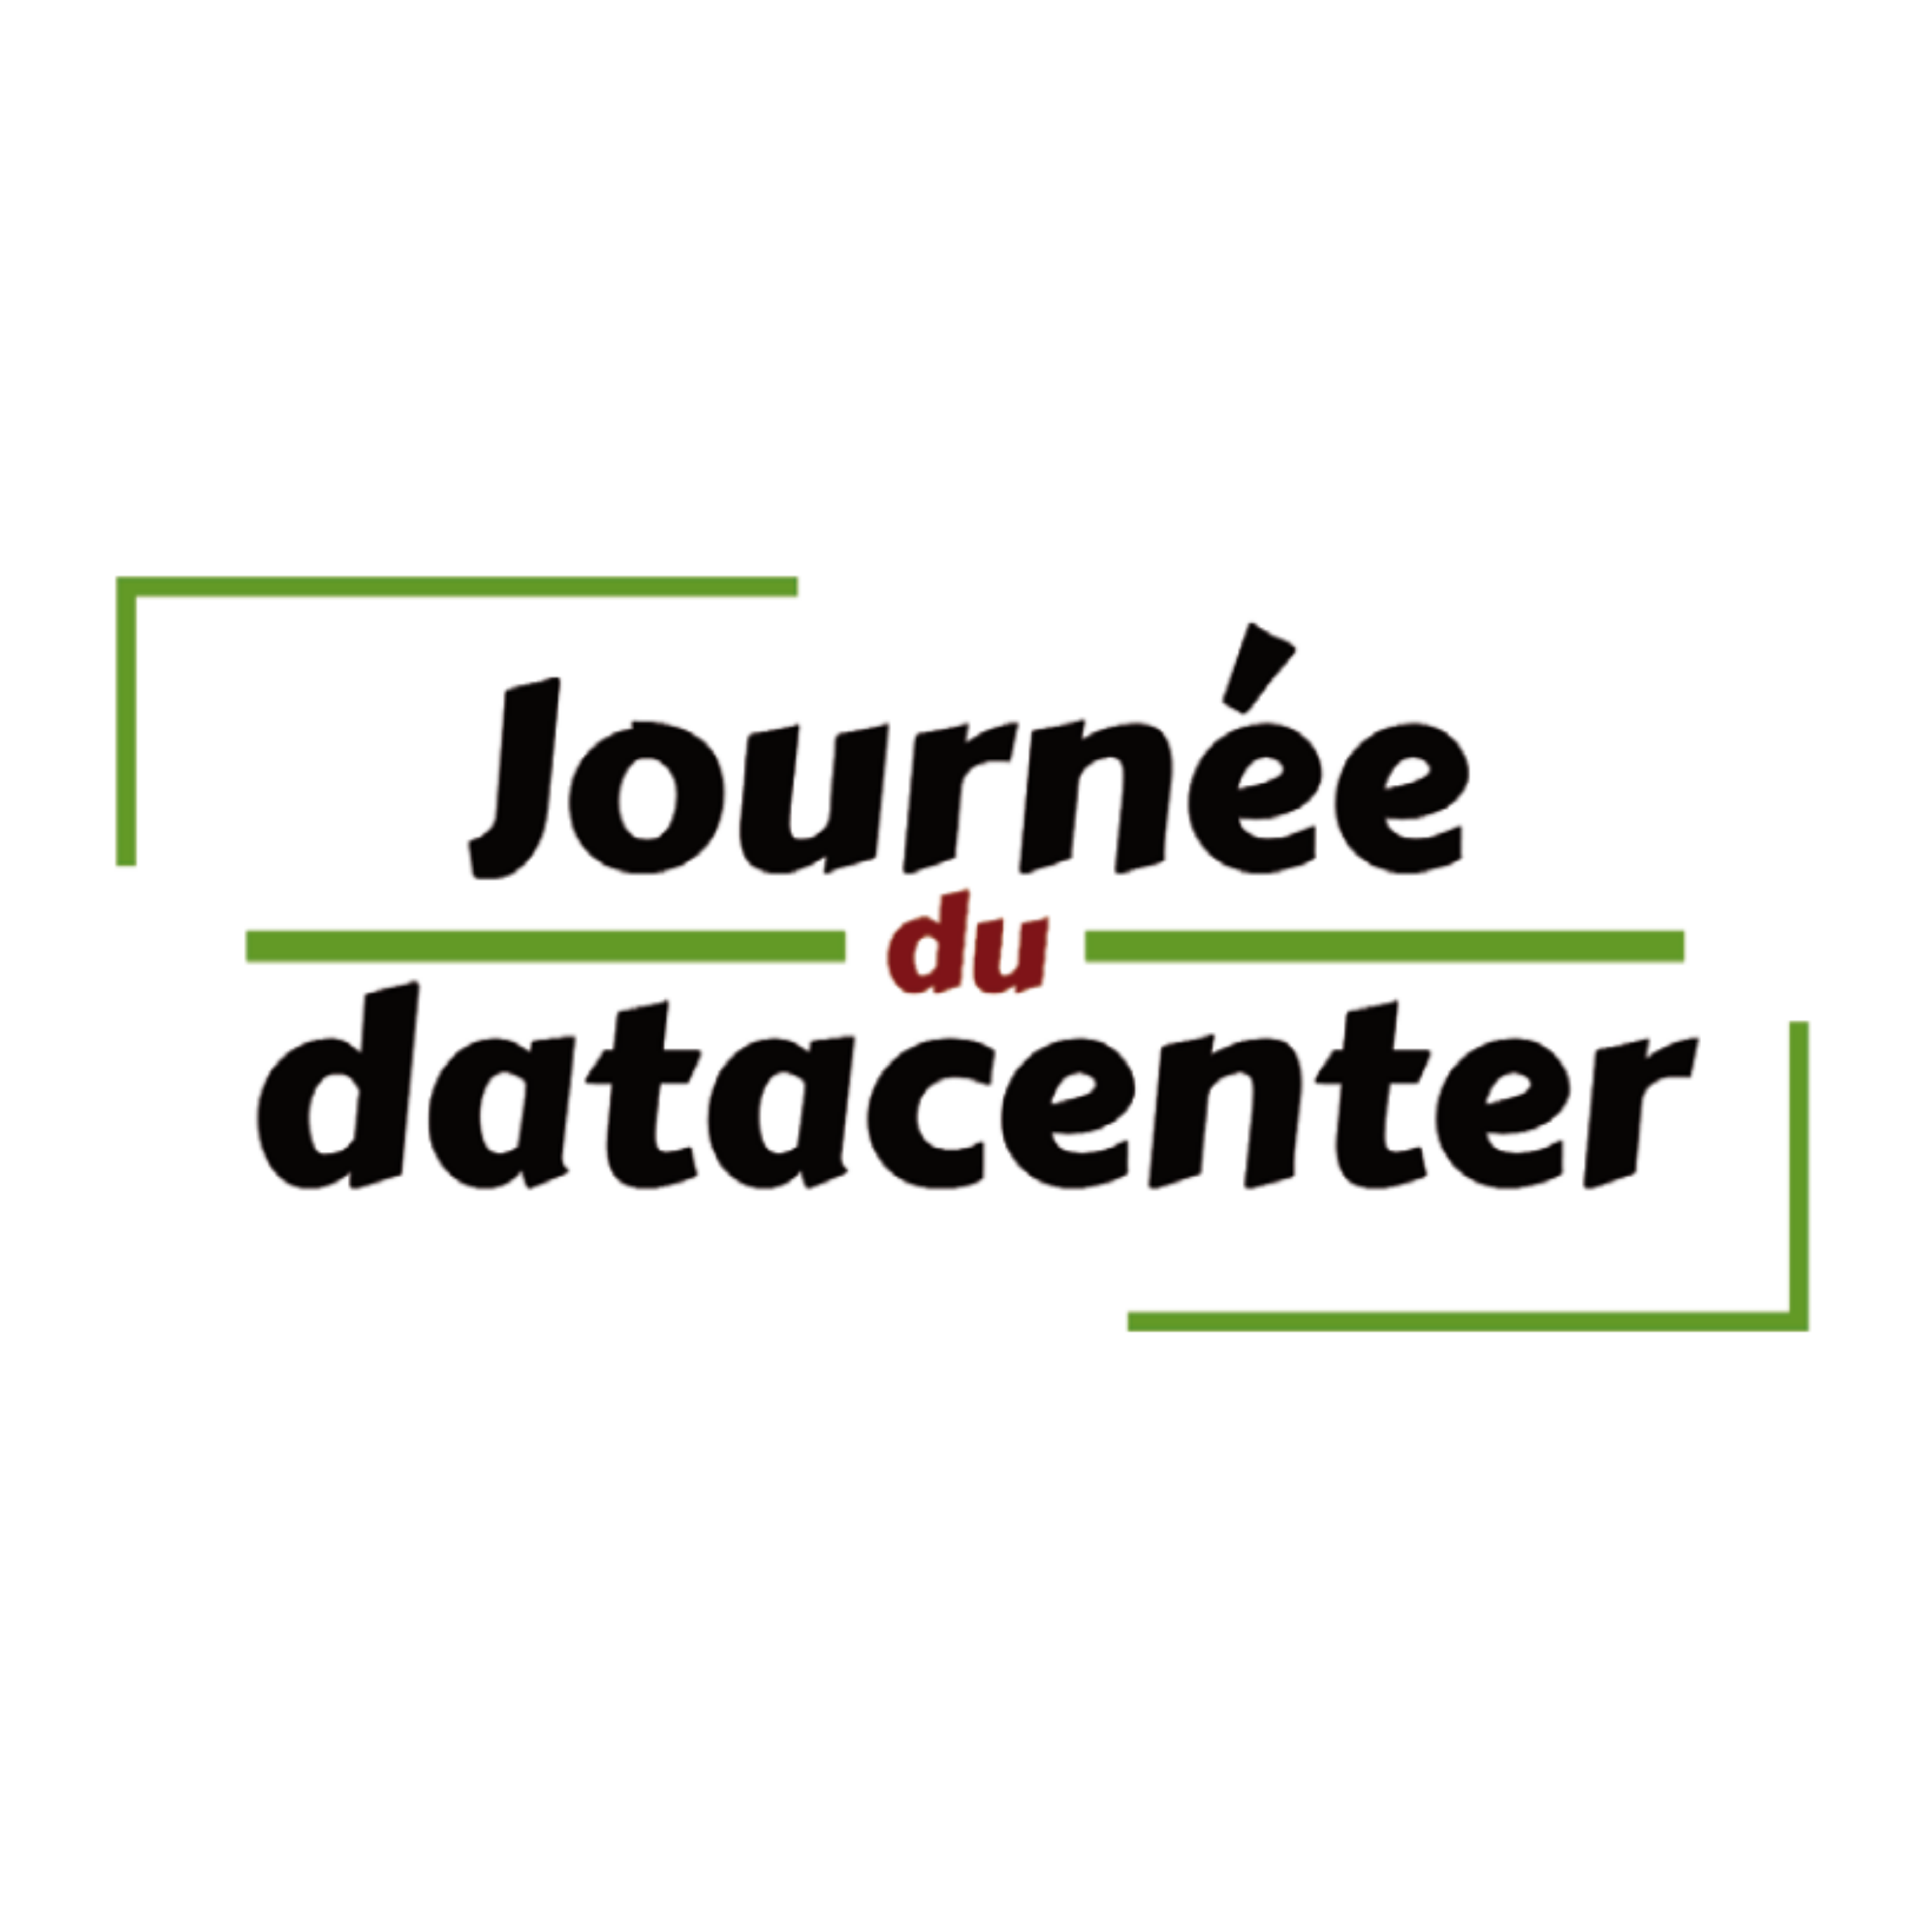 La Journée du Datacenter - 19 mai 2022 - en partenariat avec DCmag